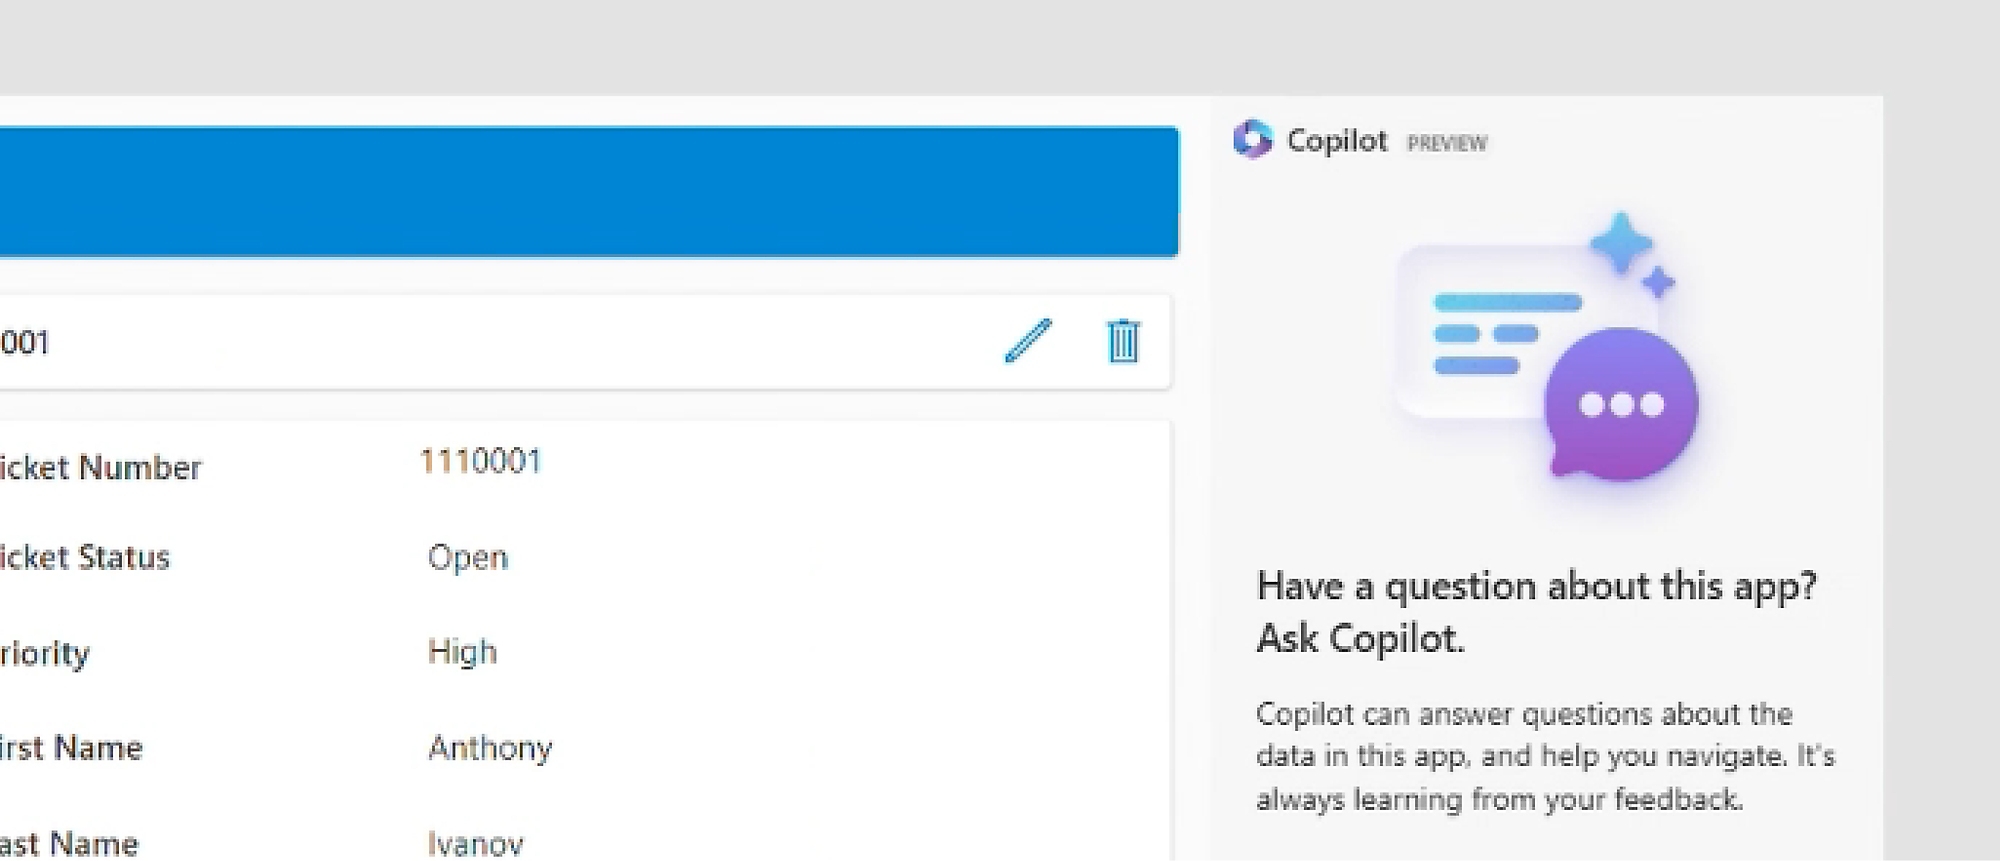 Captura de pantalla de Copilot en Power Apps, en la que se pide al usuario que haga preguntas sobre la aplicación